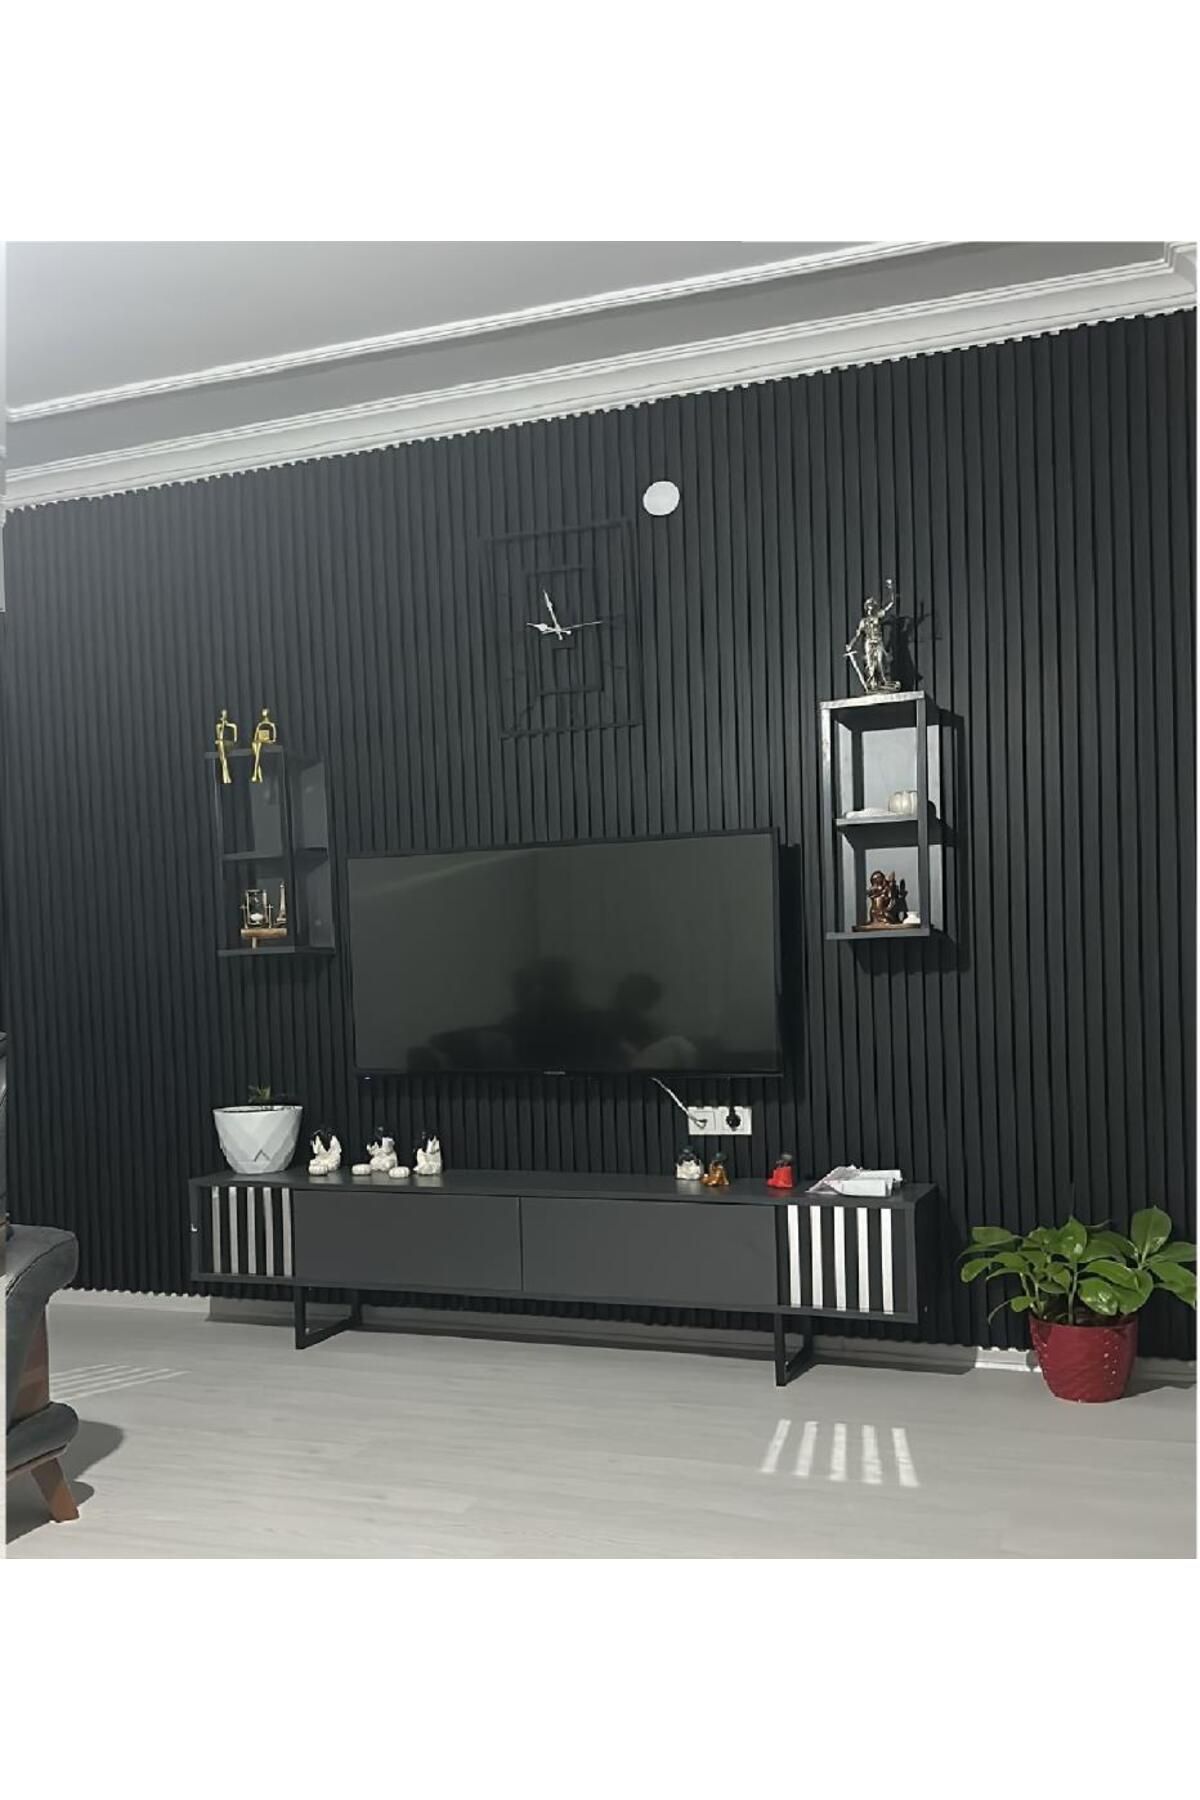 Renkli Duvarlar ATC 16cmx290cm Siyah Prefabrik Ofis Tv Ünite Pvc Kaplama Lambiri